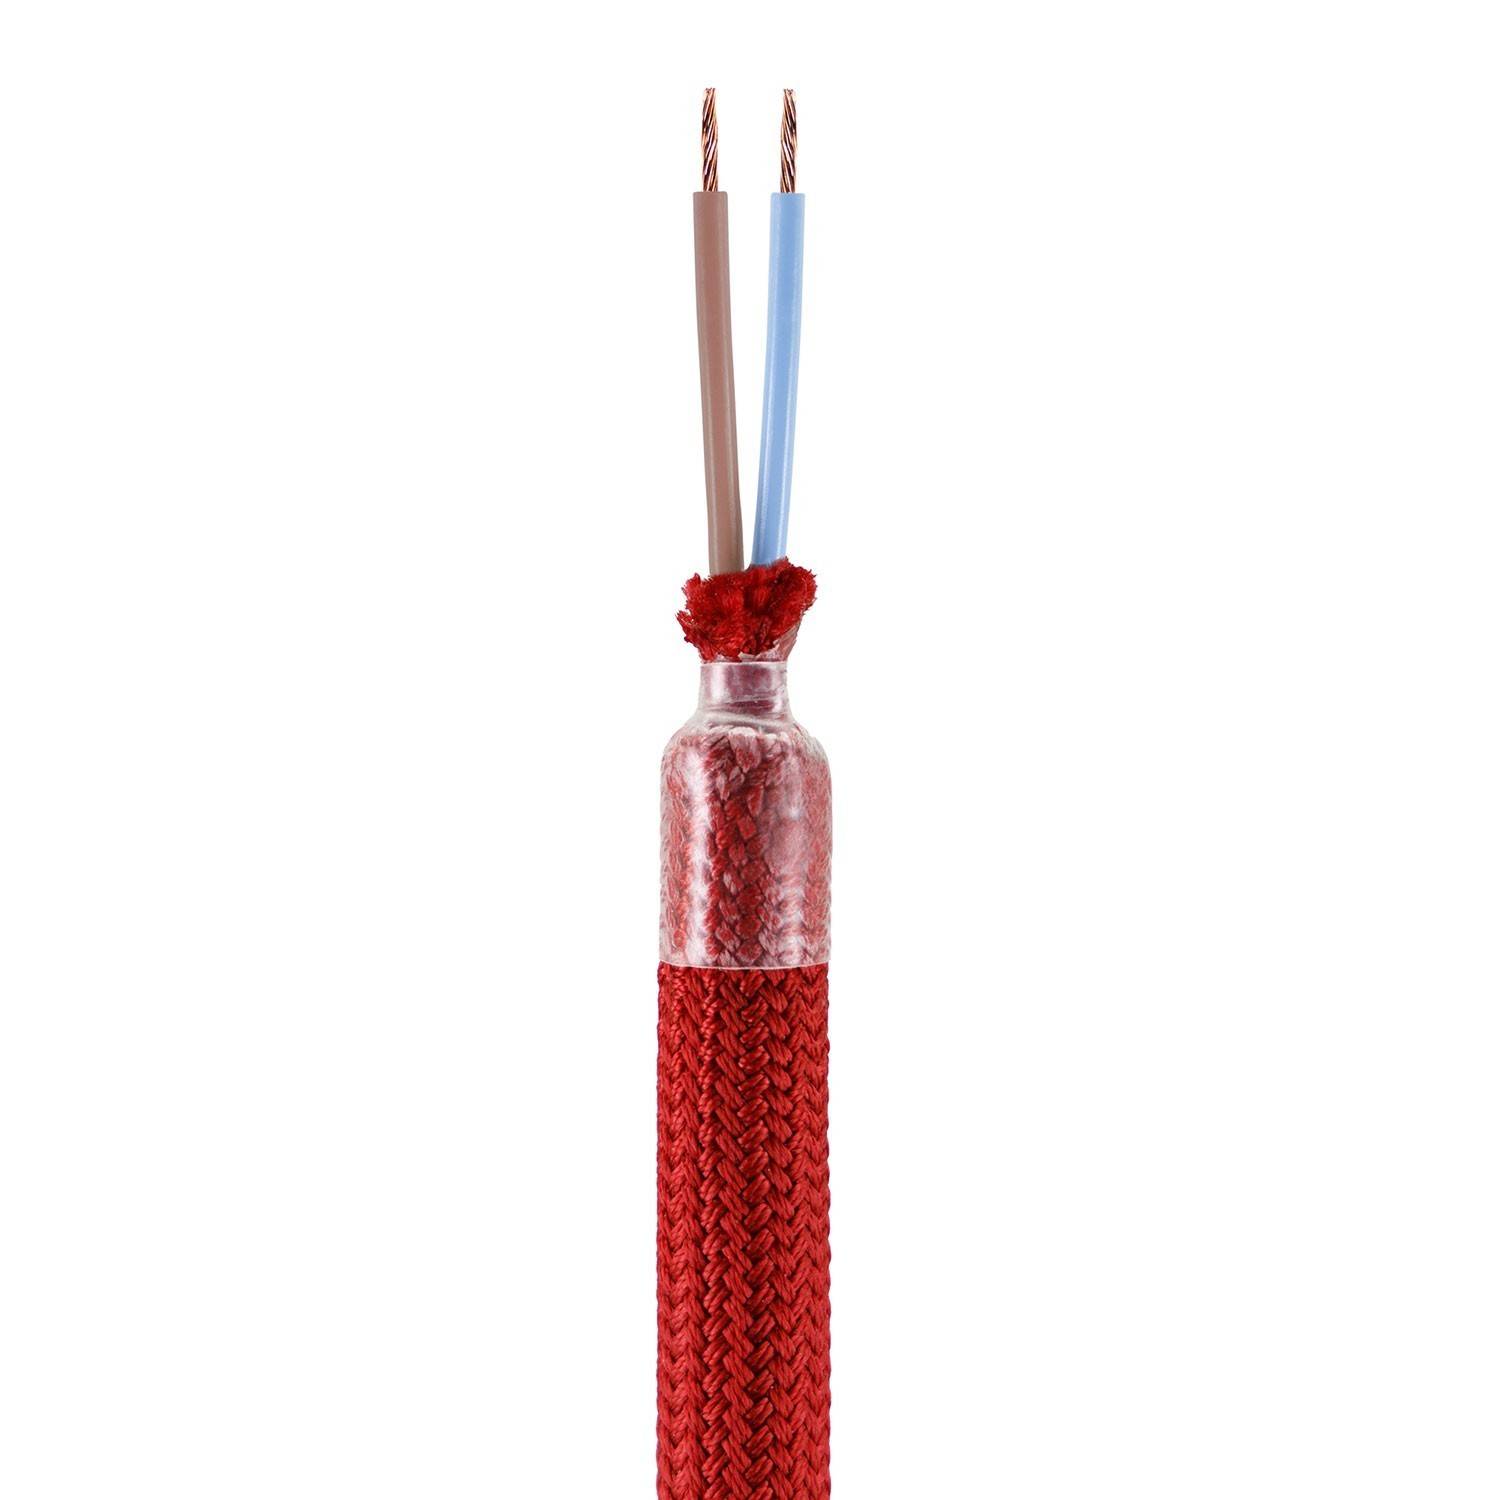 Kitul Creative Flex este un tub flexibil acoperit cu material roșu RM09 și terminale metalice.